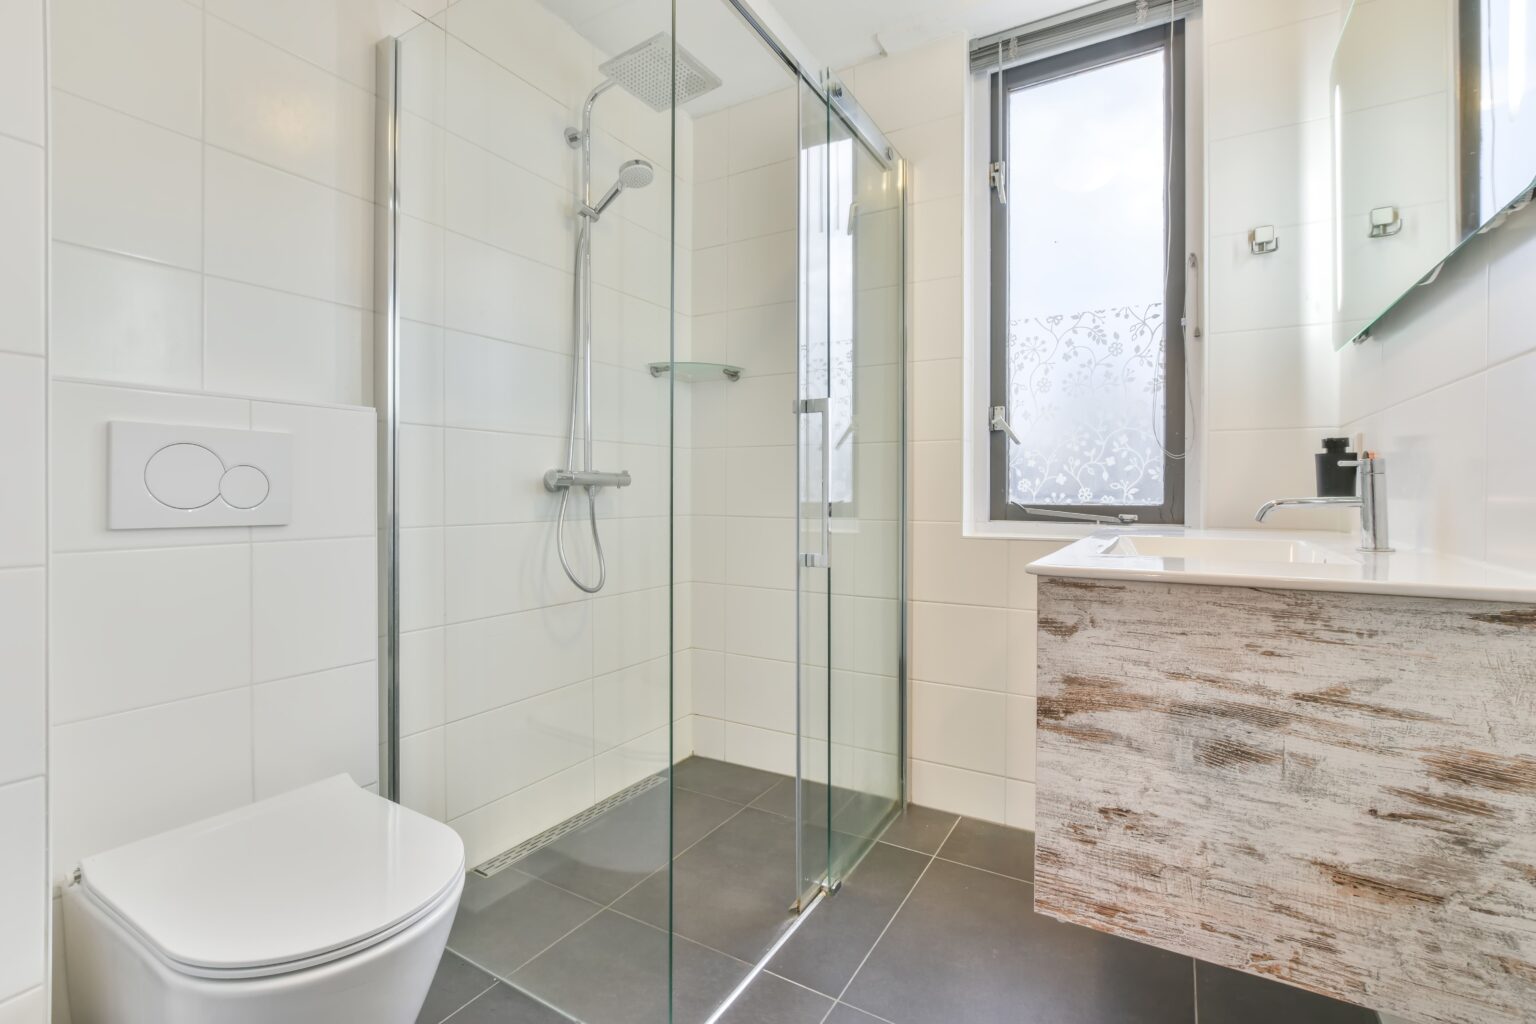 Kleines Bad mit Dusche gestalten: Optimale Raumnutzung und Platzierung der Dusche